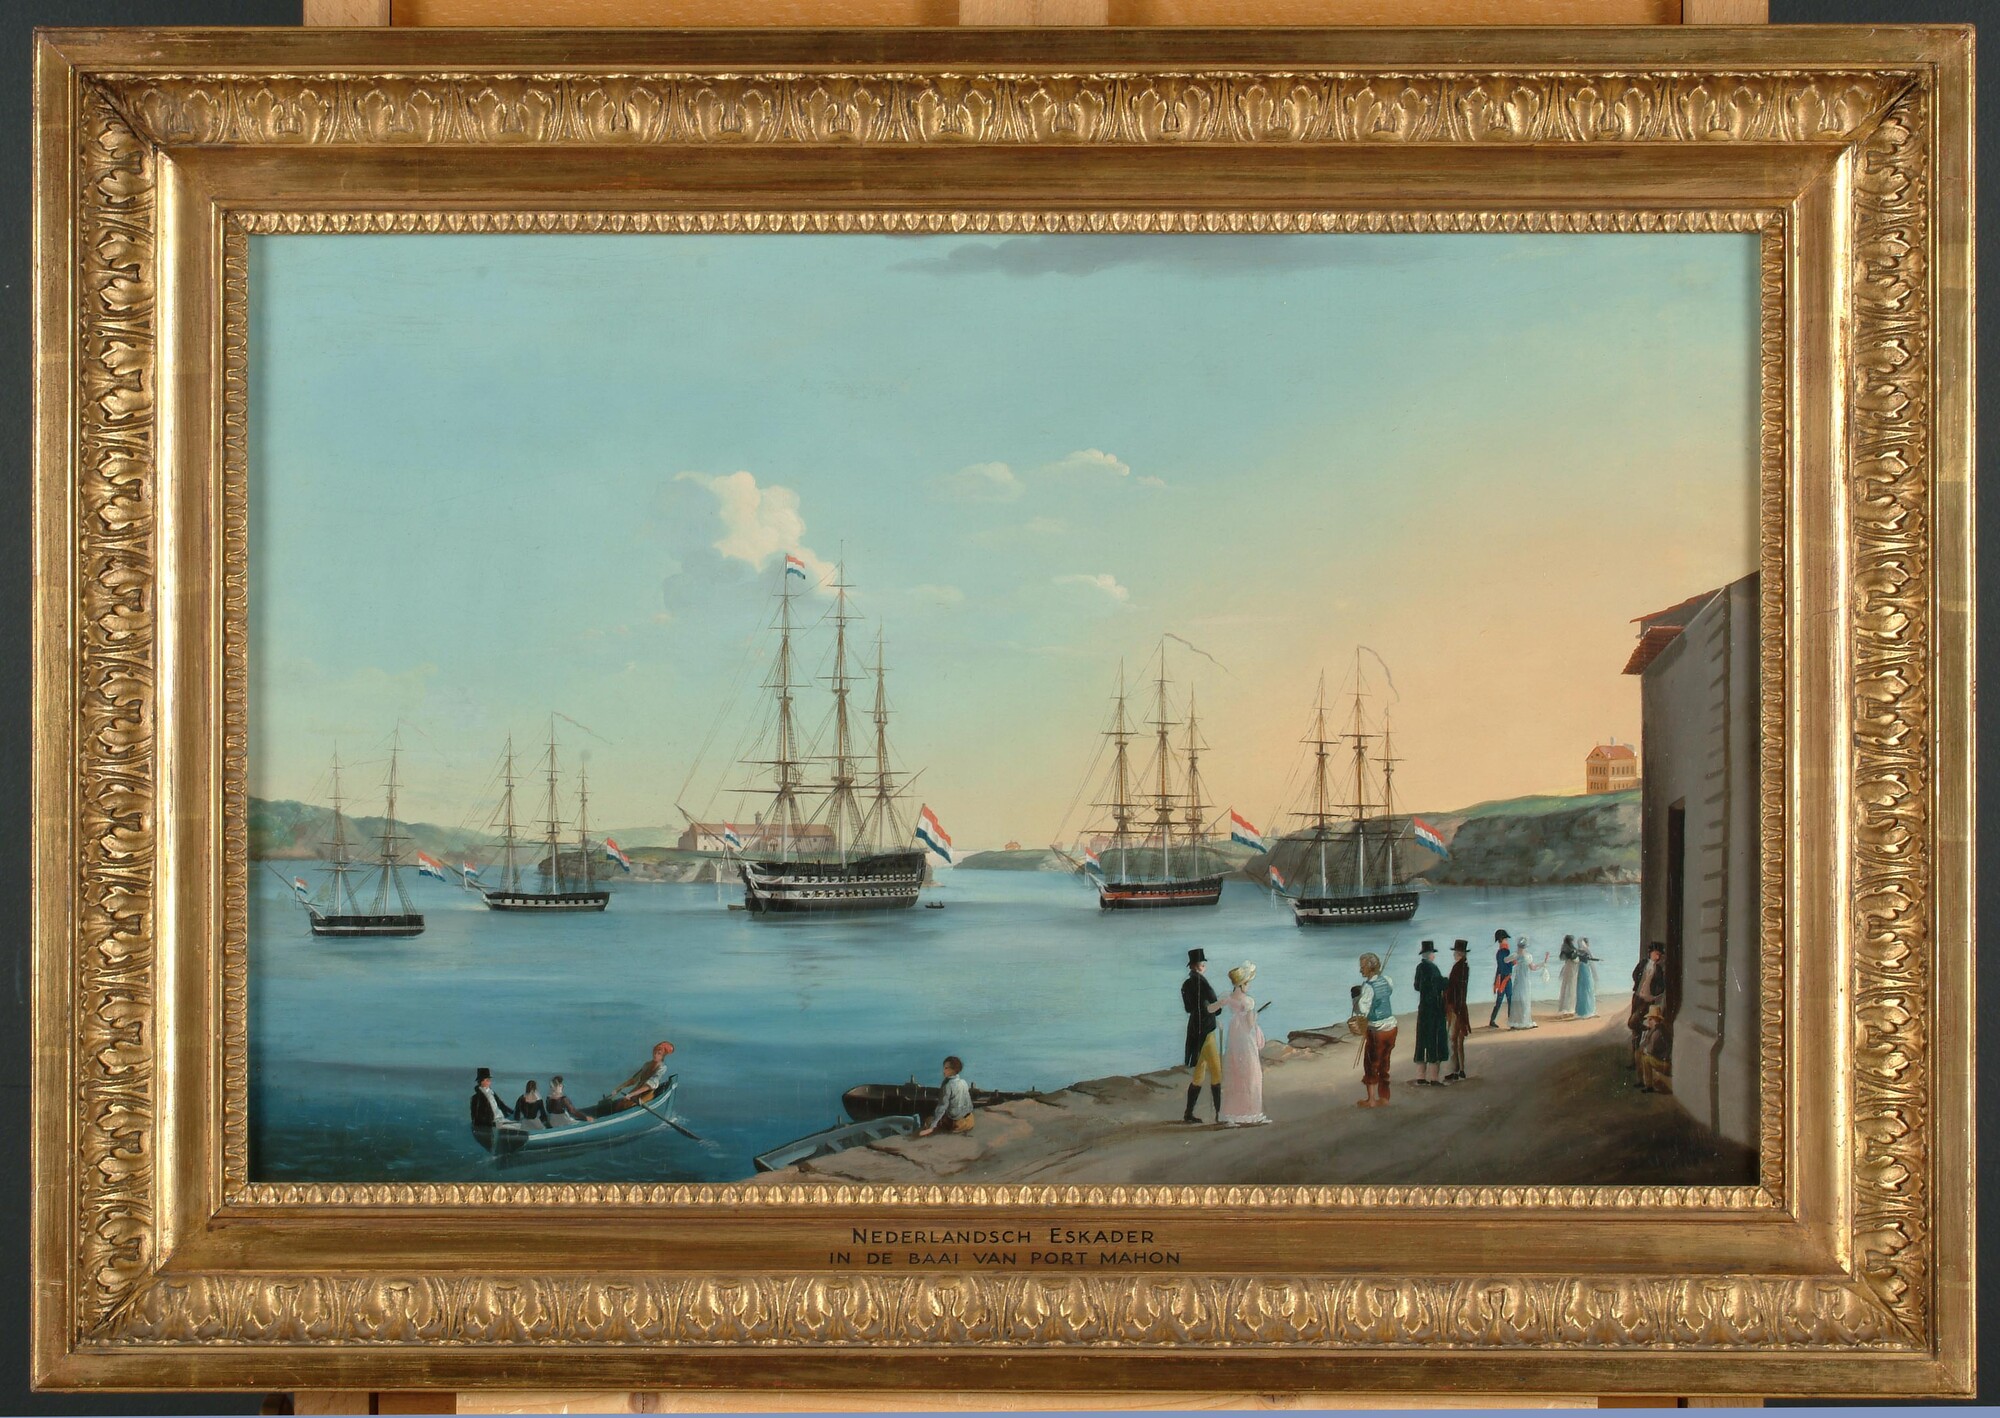 S.0173(01); Nederlands eskader in de haven van Port Mahon; schilderij